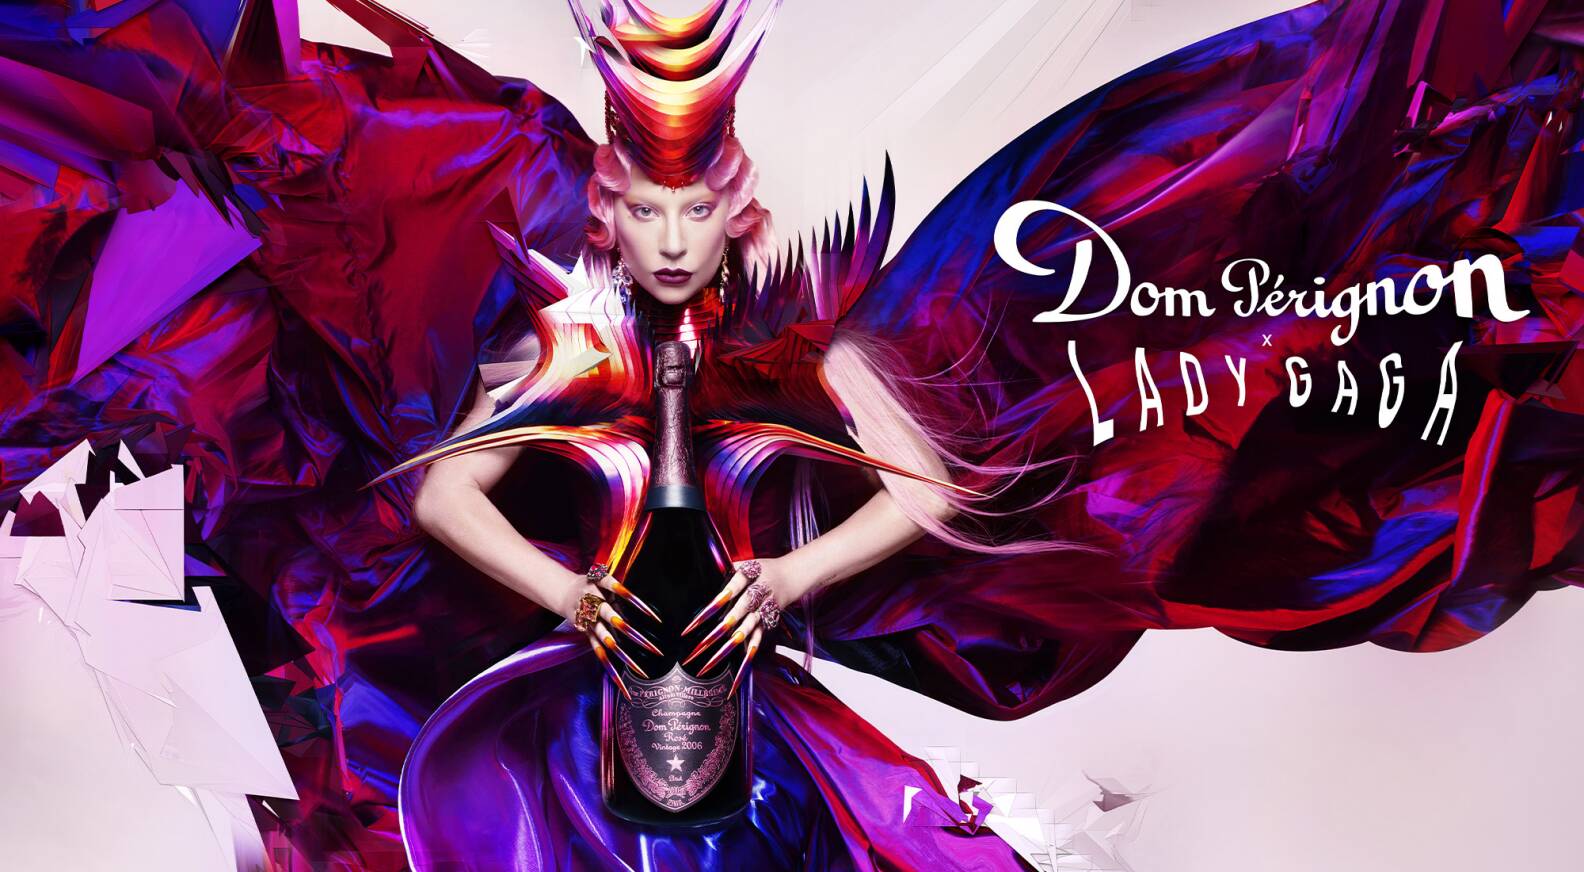 Dom Pérignon x Lady Gaga: the power of creative freedom - LVMH